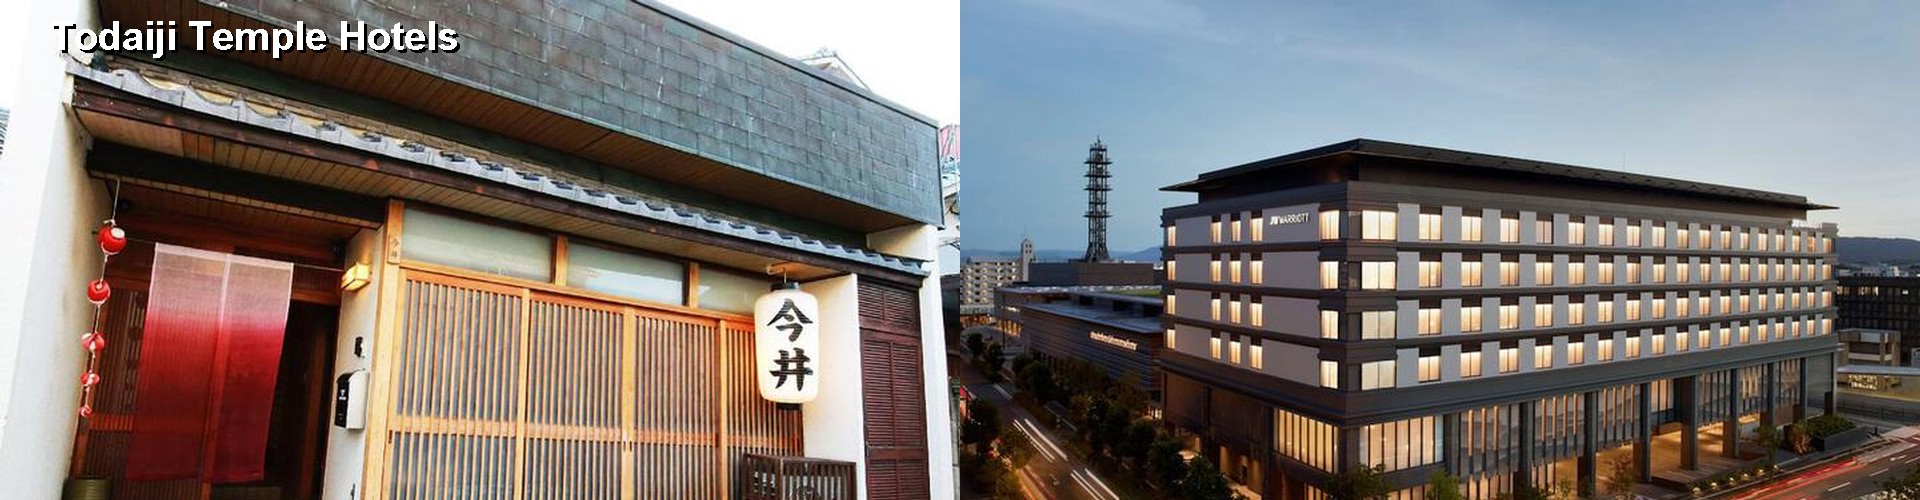 5 Best Hotels near Todaiji Temple